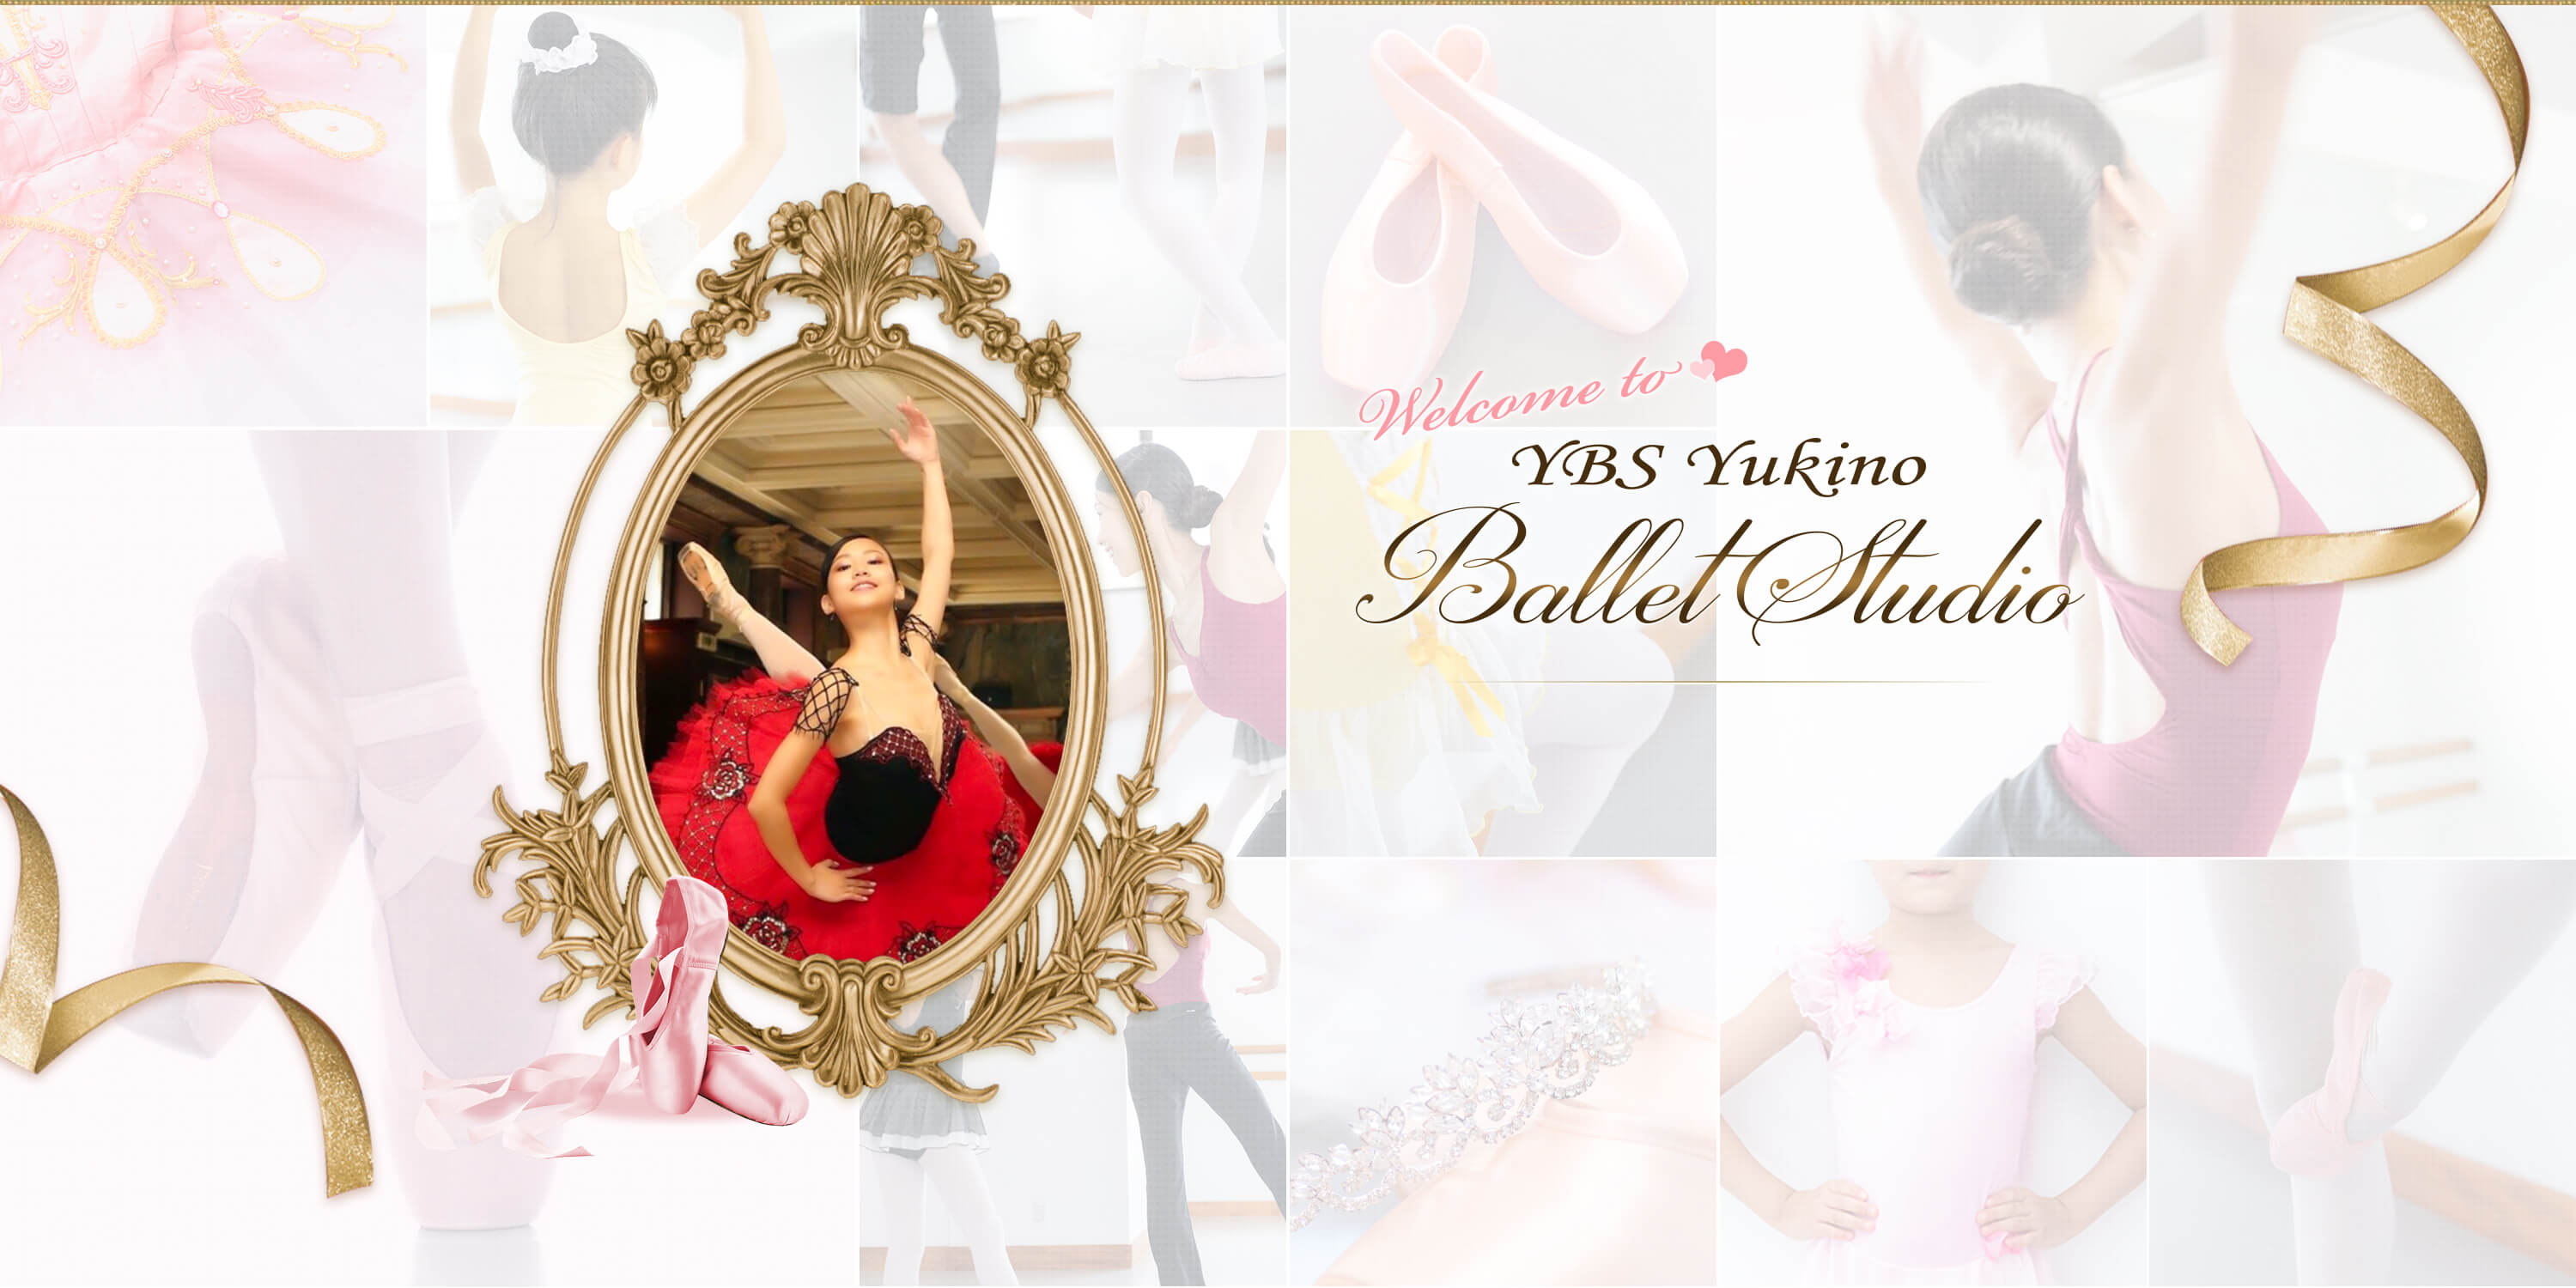 YBS yukino ballet studio 世田谷区、代打橋駅徒歩4分のバレエスタジオ